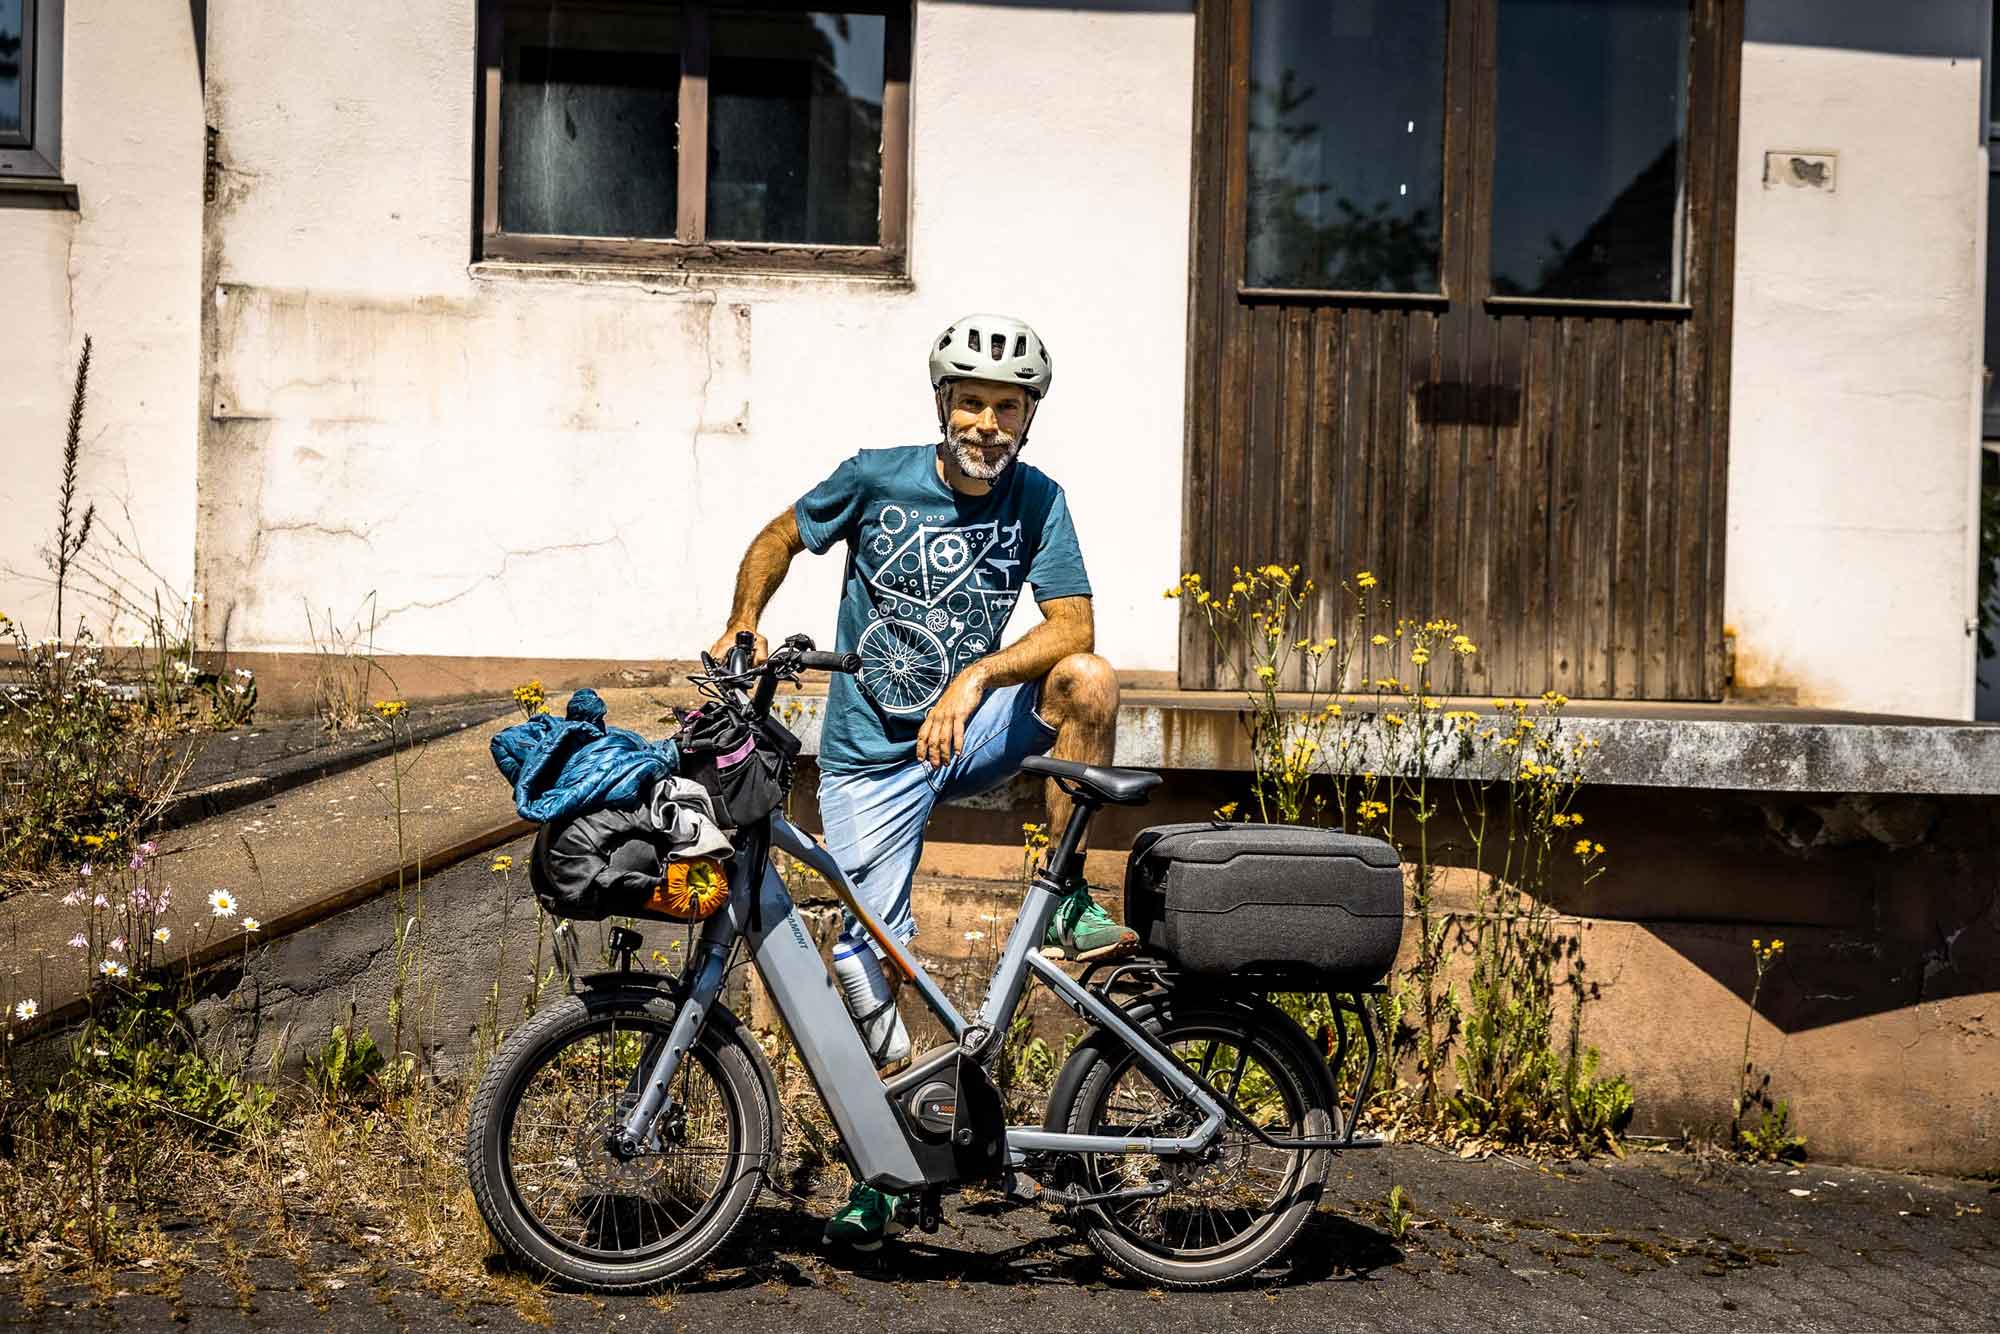 Bergamont hans-e test: es war ein bikepacking-trip der anderen art – aber martin hatte richtig viel spaß dabei!